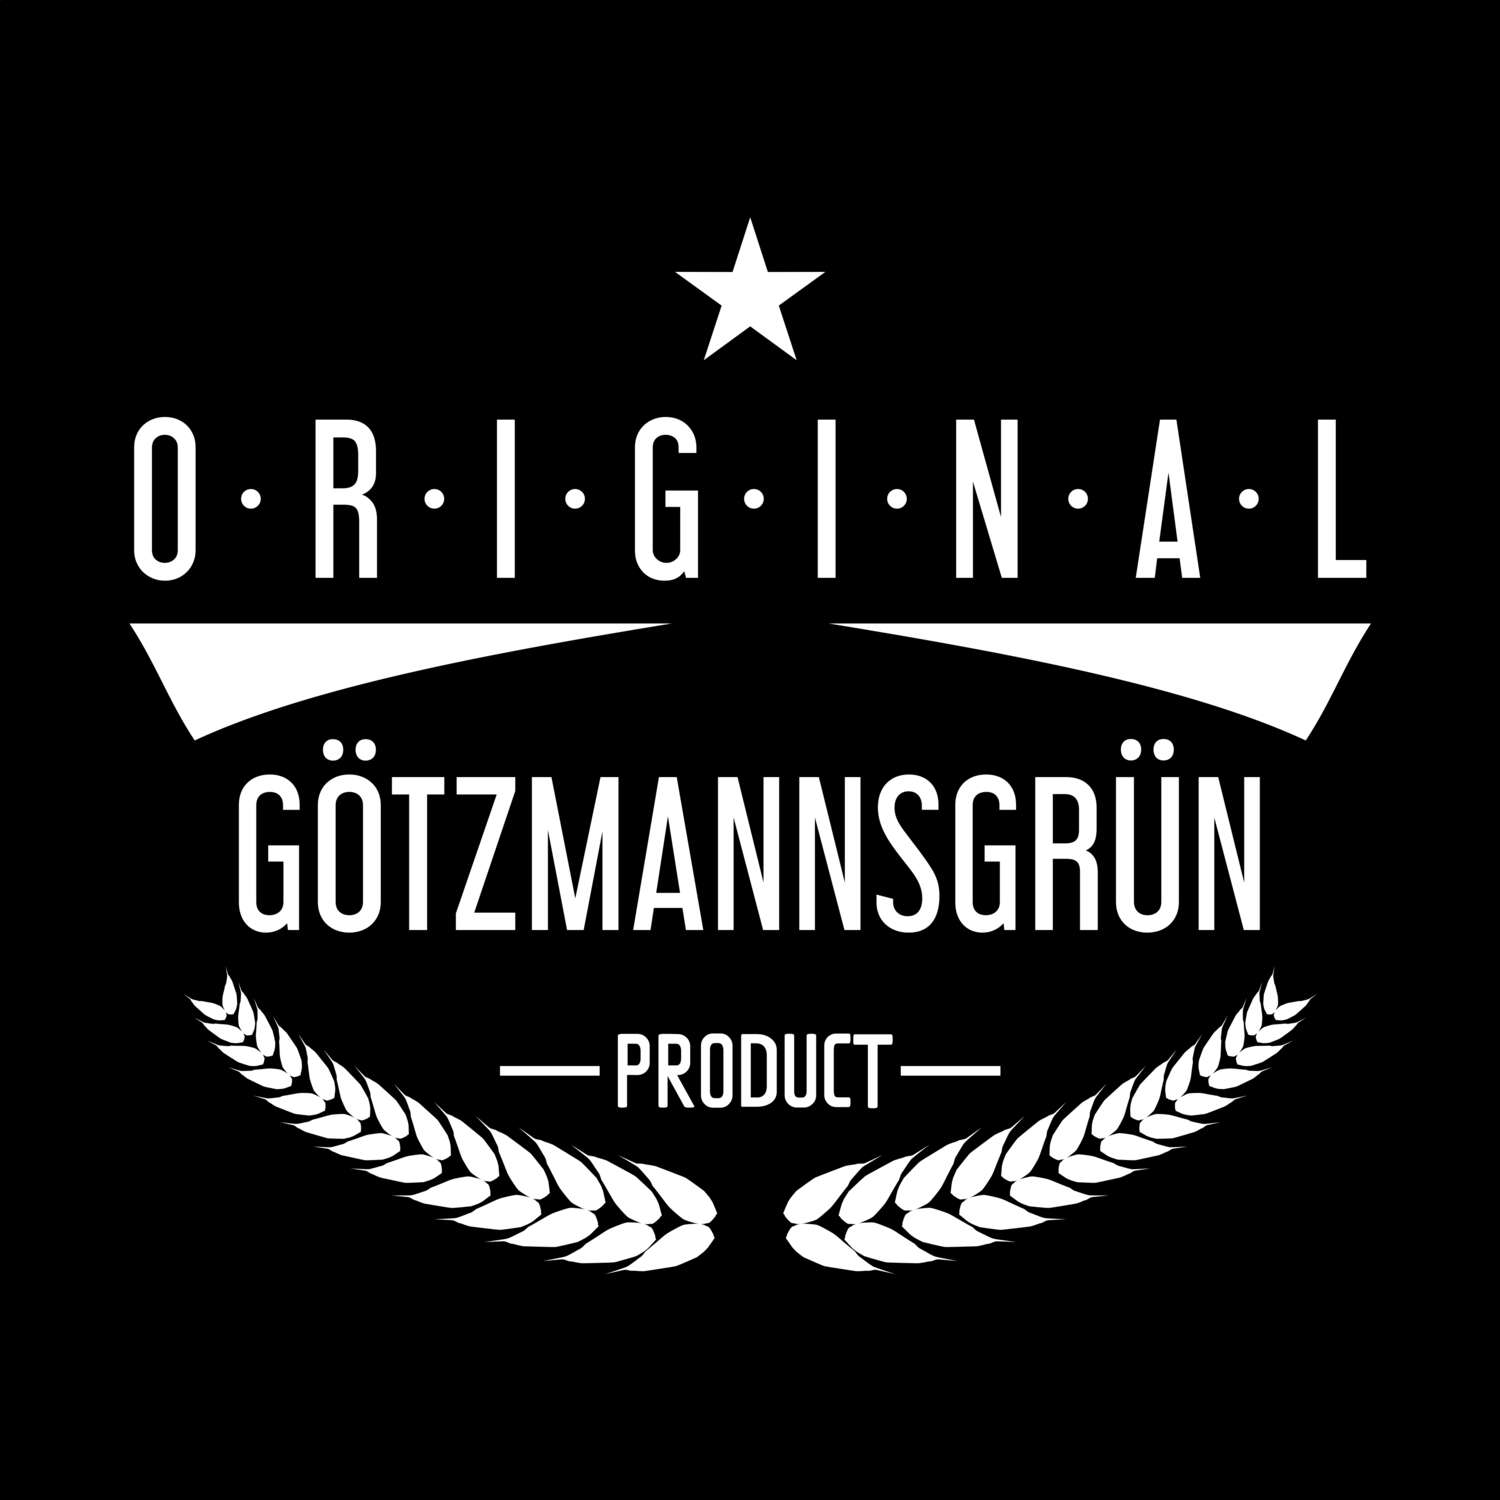 Götzmannsgrün T-Shirt »Original Product«